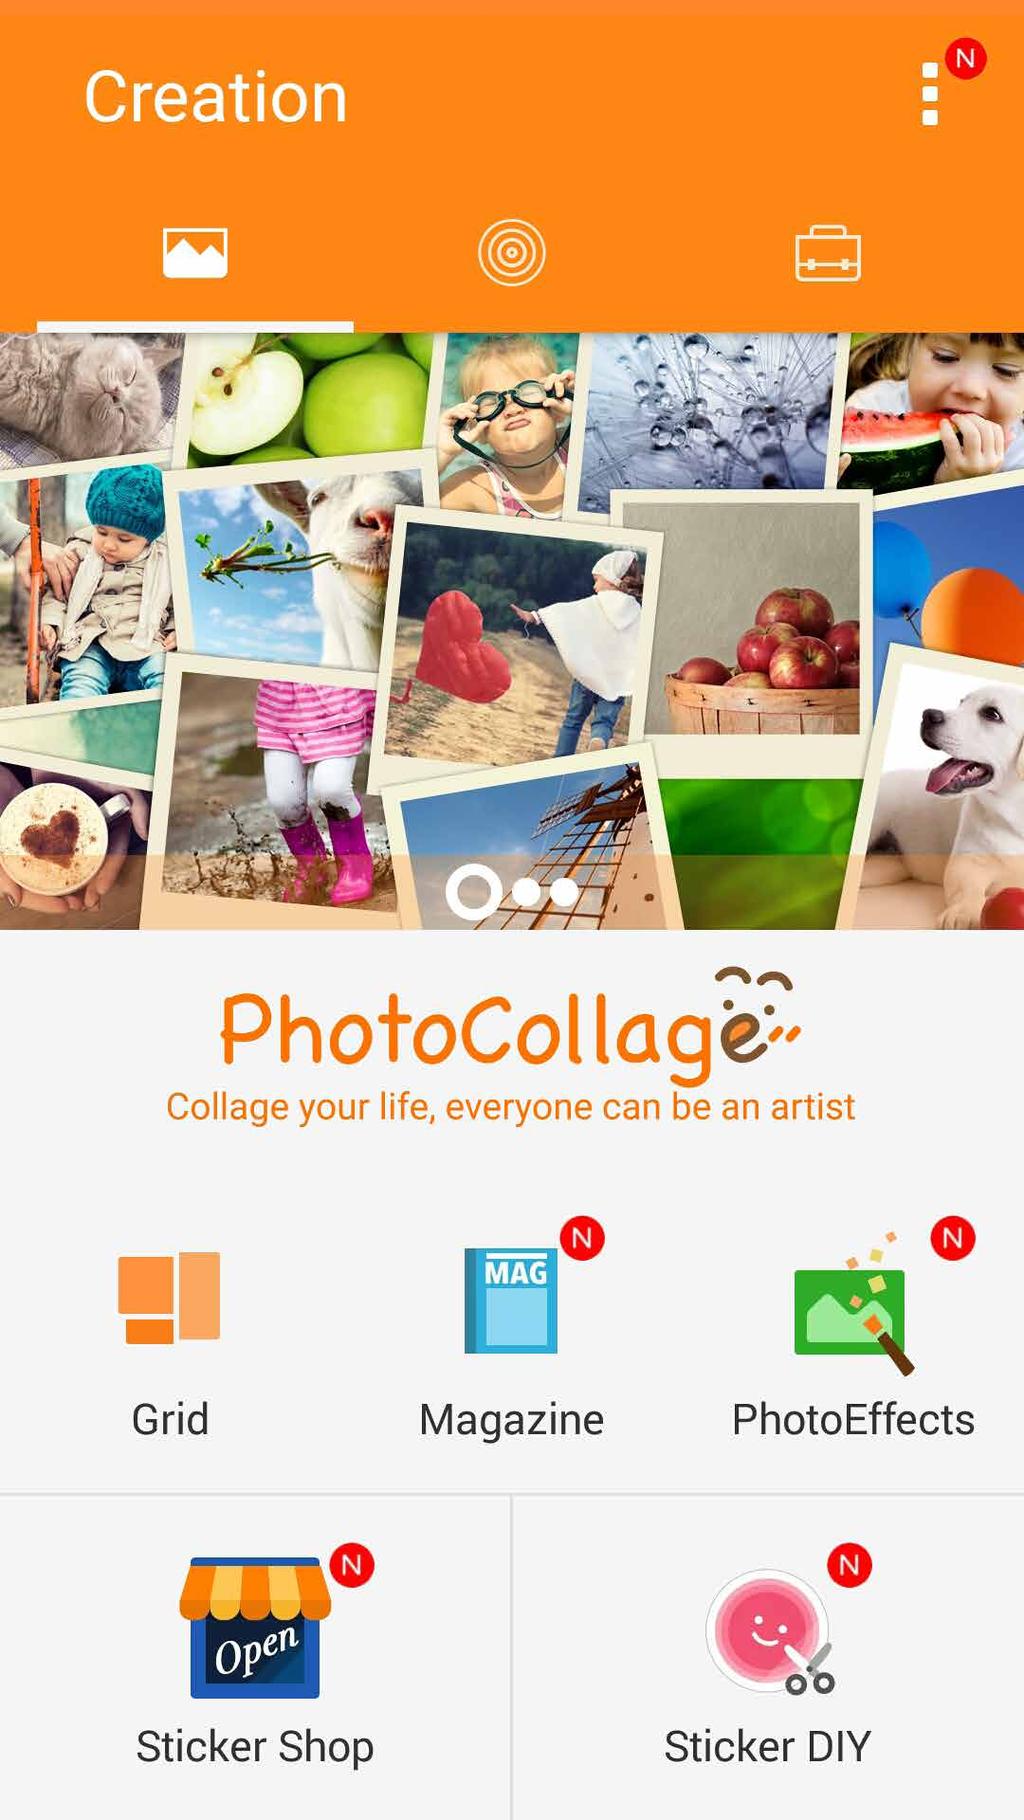 PhotoCollage Käytä PhotoCollage-sovellusta luodaksesi kollaasin valokuvakokoelmastasi. Käynnistääksesi PhotoCollage-sovelluksen, napauta Kotinäytössä PhotoCollage.